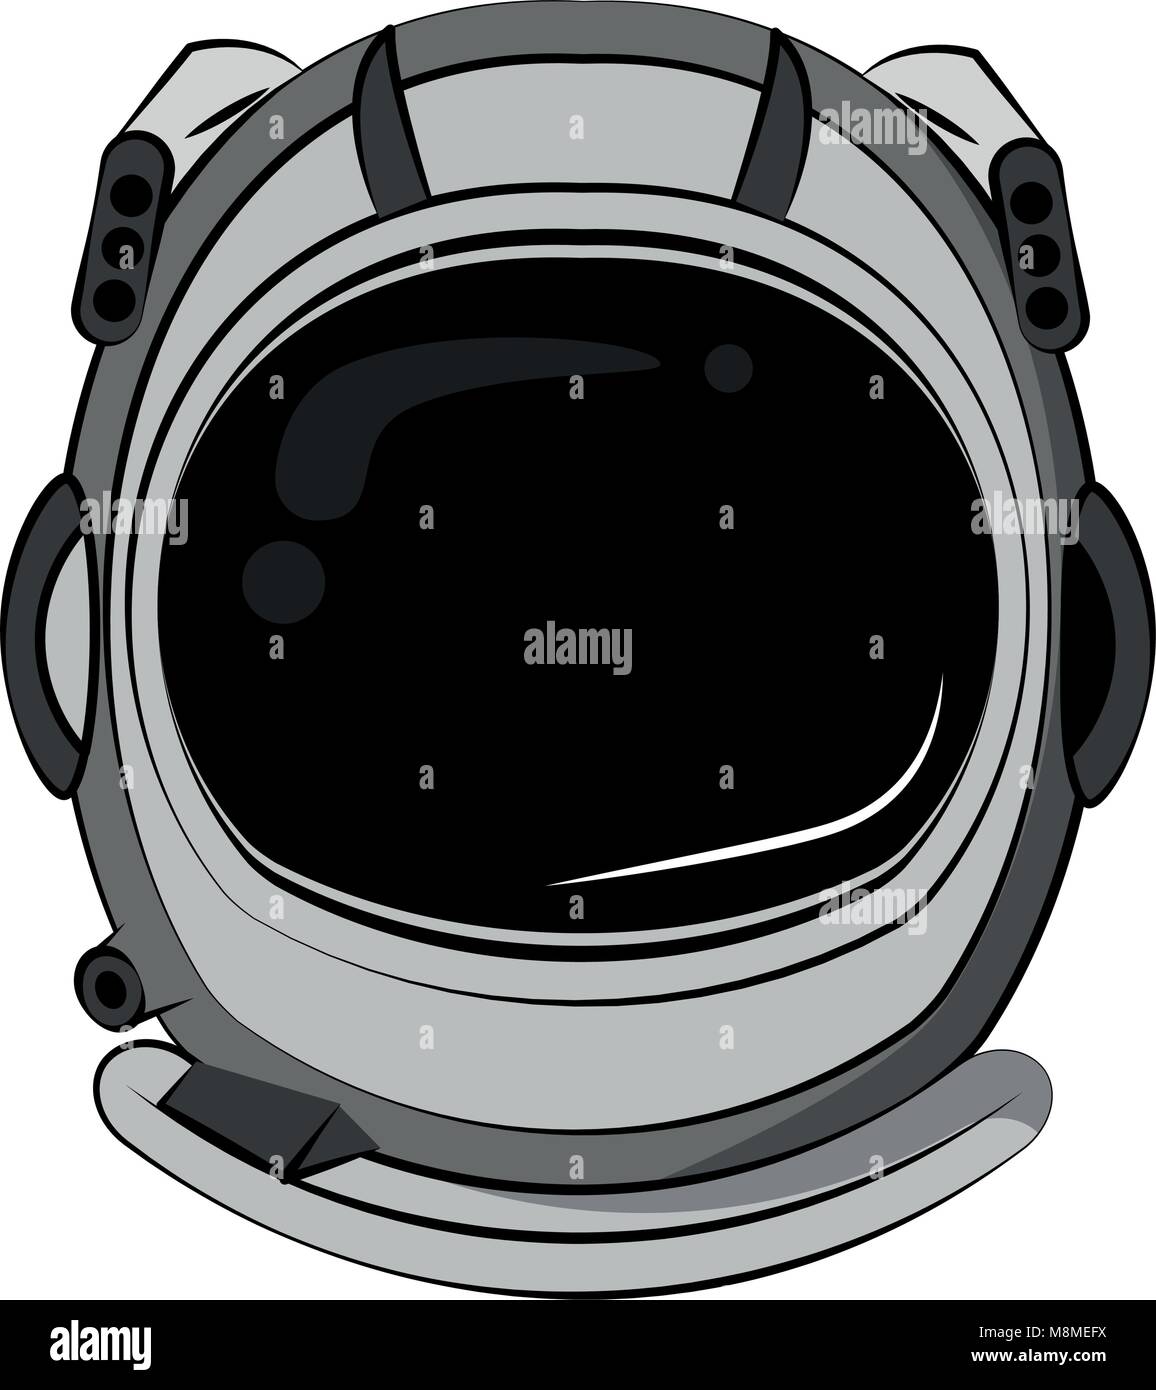 Astronaut helmet cartoon Stock Vector Image & Art - Alamy